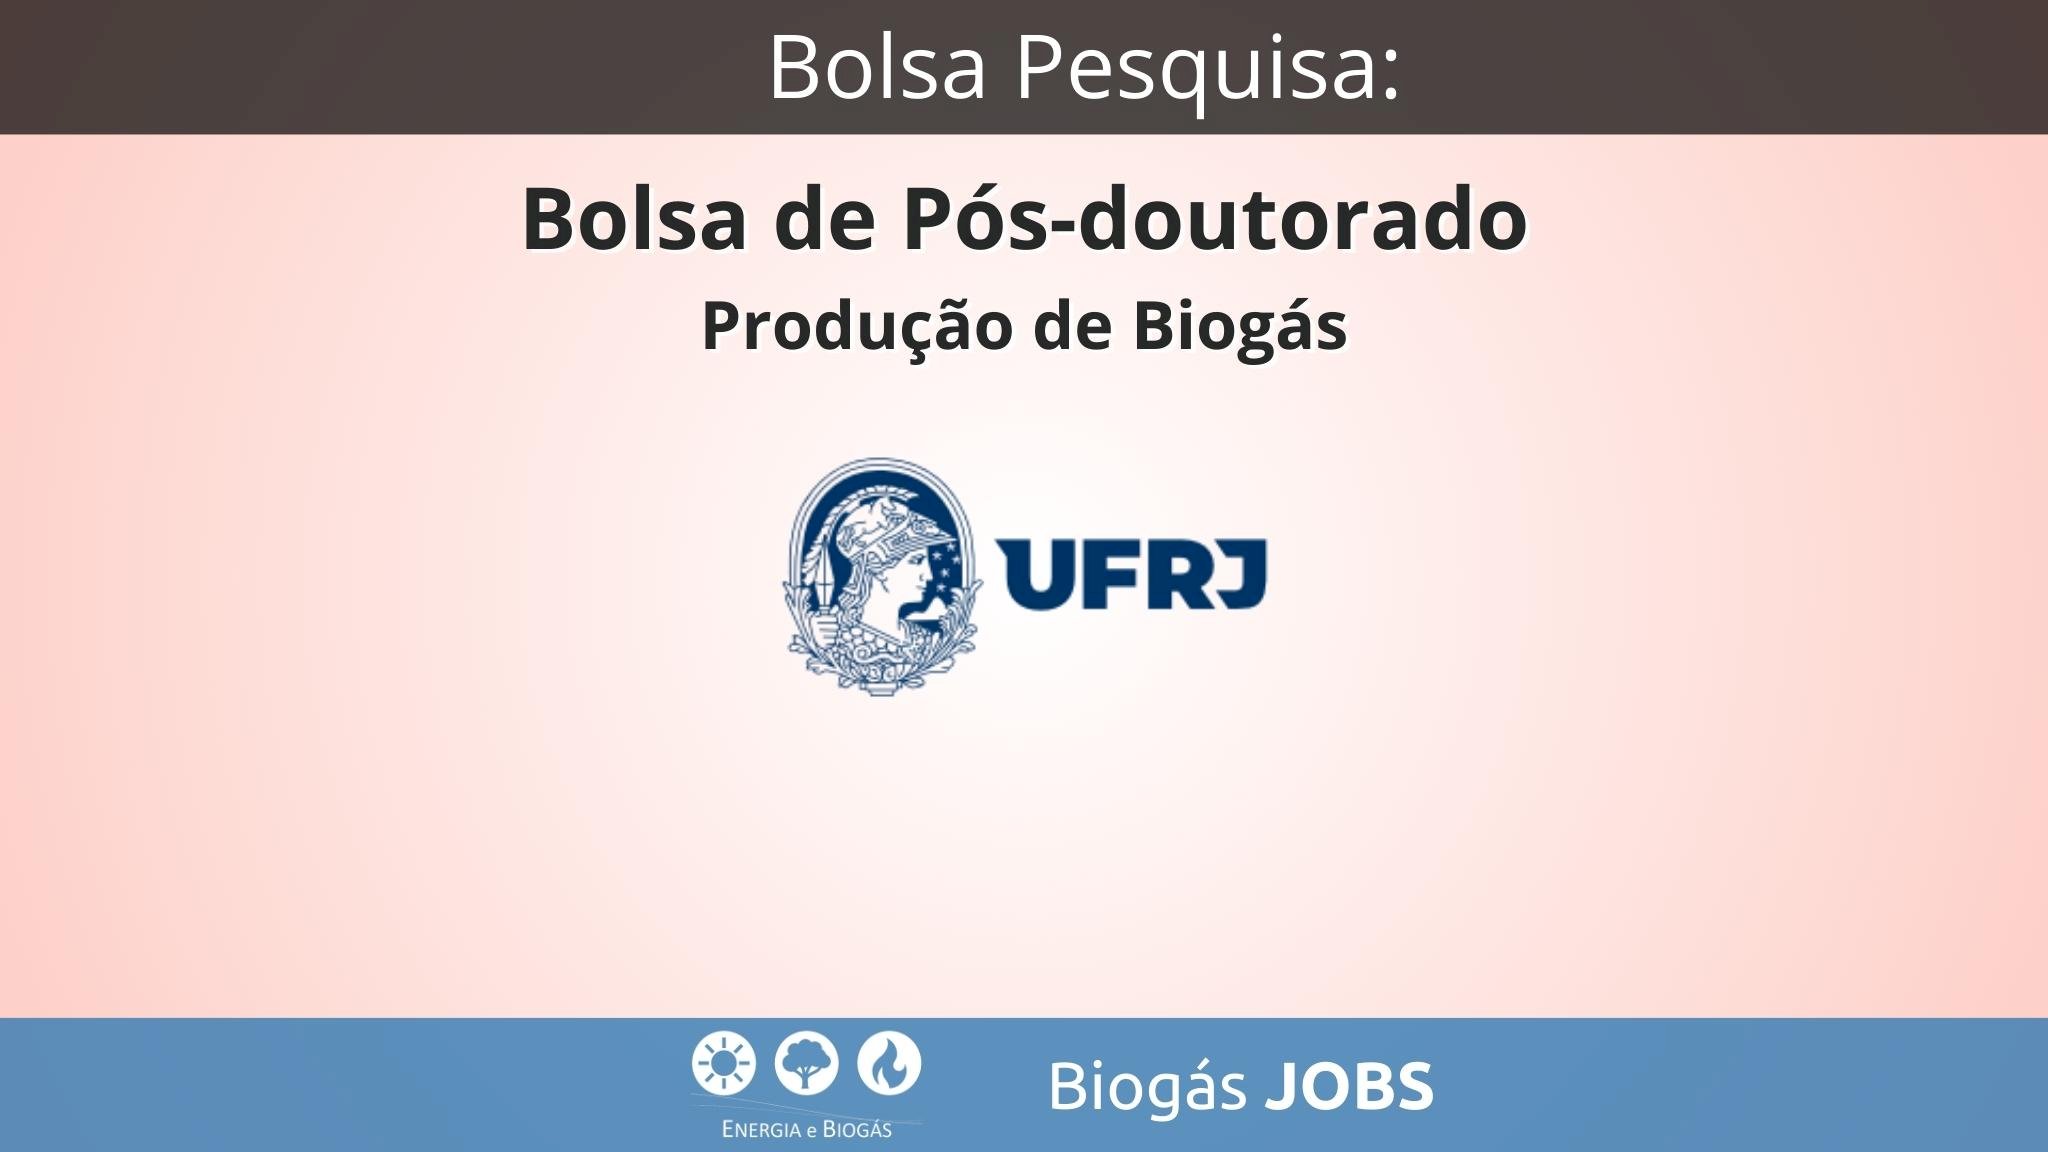 Bolsa de Pós-doutorado - Produção de Biogás